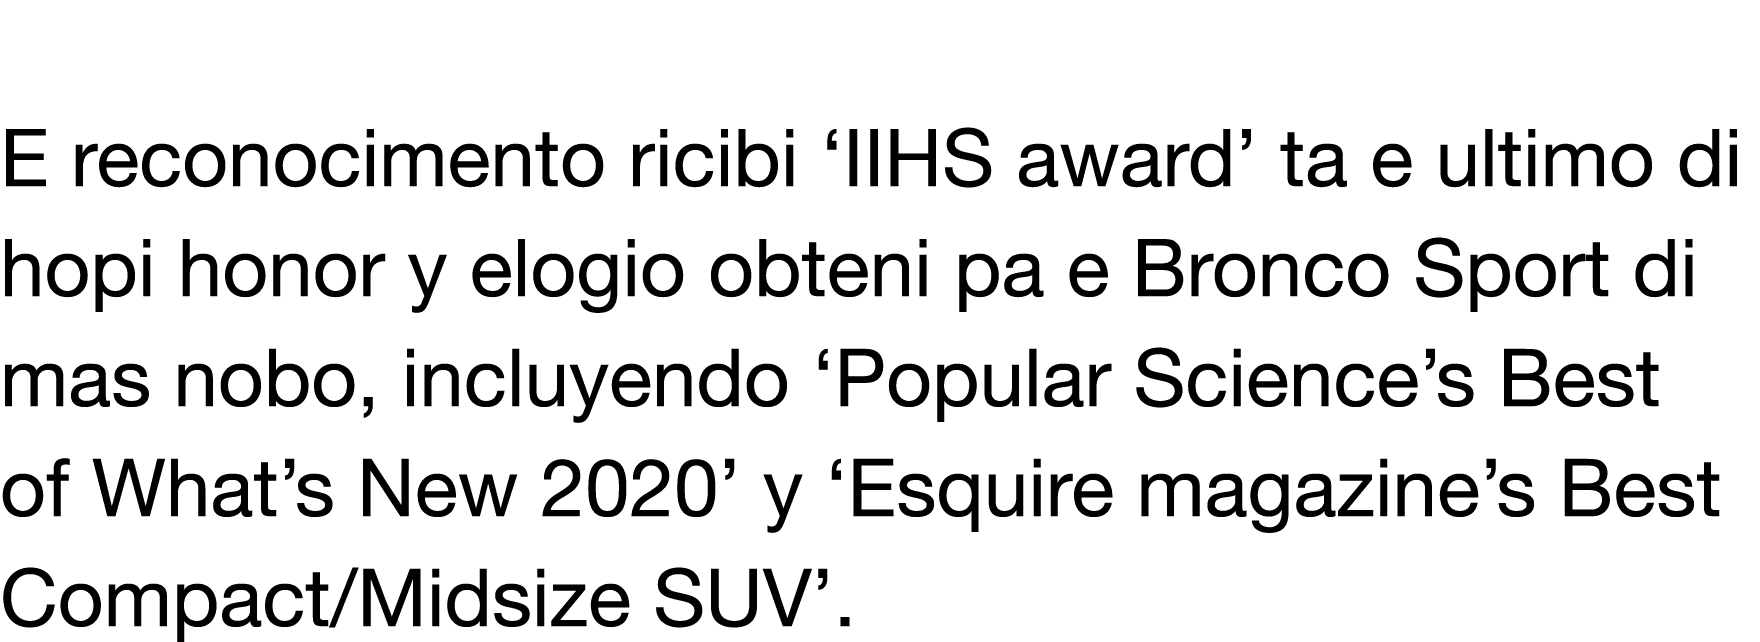  E reconocimento ricibi  IIHS award  ta e ultimo di hopi honor y elogio obteni pa e Bronco Sport di mas nobo, incluye   